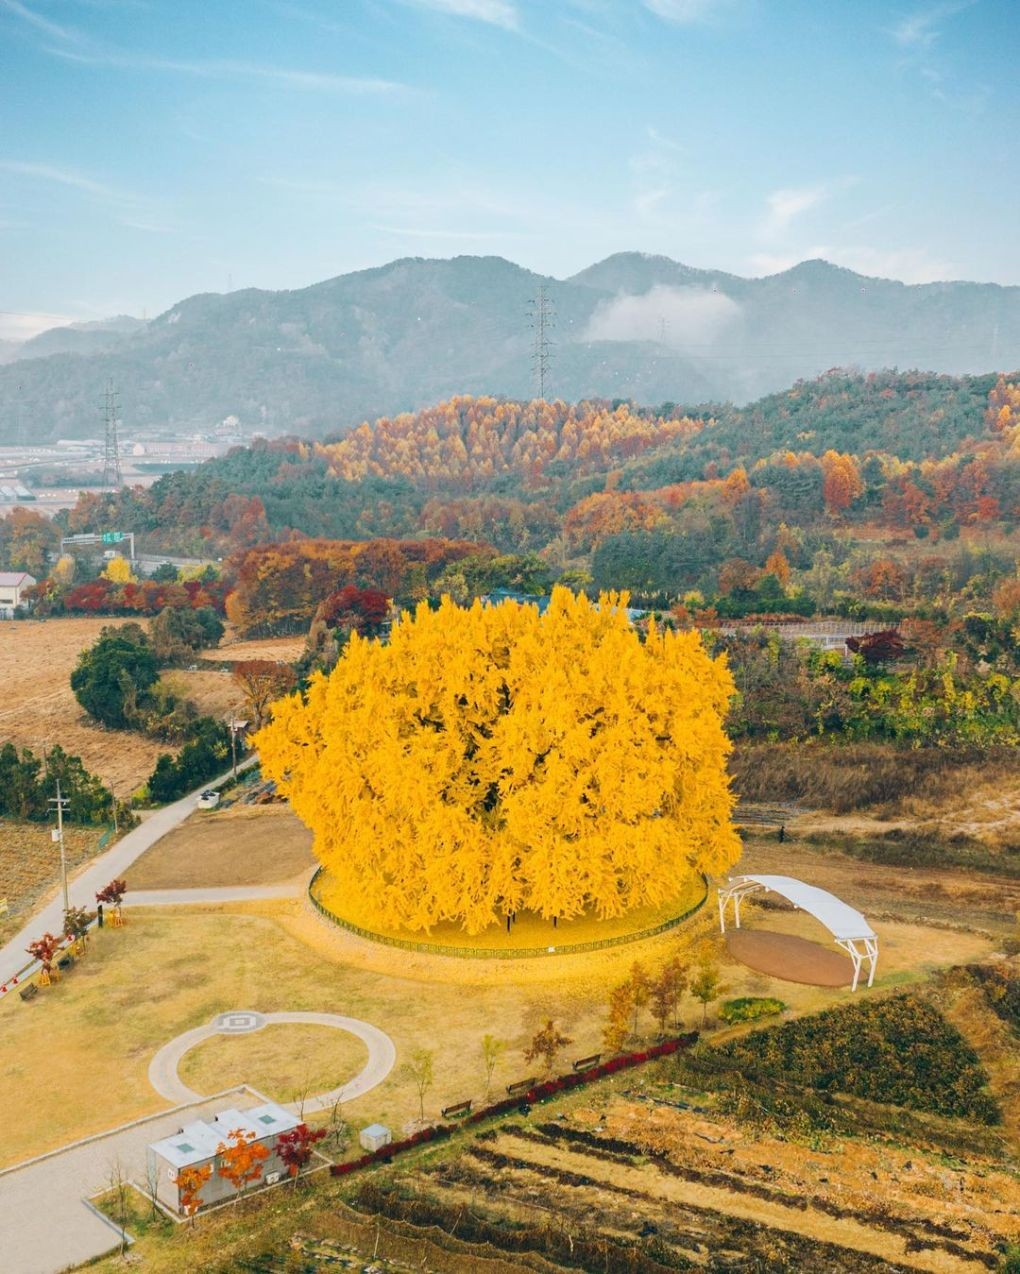 Cây ngân hạnh khổng lồ ở thành phố Wonju, tỉnh Gangwon là một trong những điểm ngắm cảnh nổi tiếng nhất Hàn Quốc vào mùa thu hàng năm. Với ước tính khoảng 800-1.000 năm tuổi, nó được ví như hóa thạch sống của xứ sở kim chi. Nhìn từ trên cao, cây nổi bật trước rừng lá phong phía sau, tựa quả cầu vàng rực rỡ. (Nguồn: Instagram im0gil)